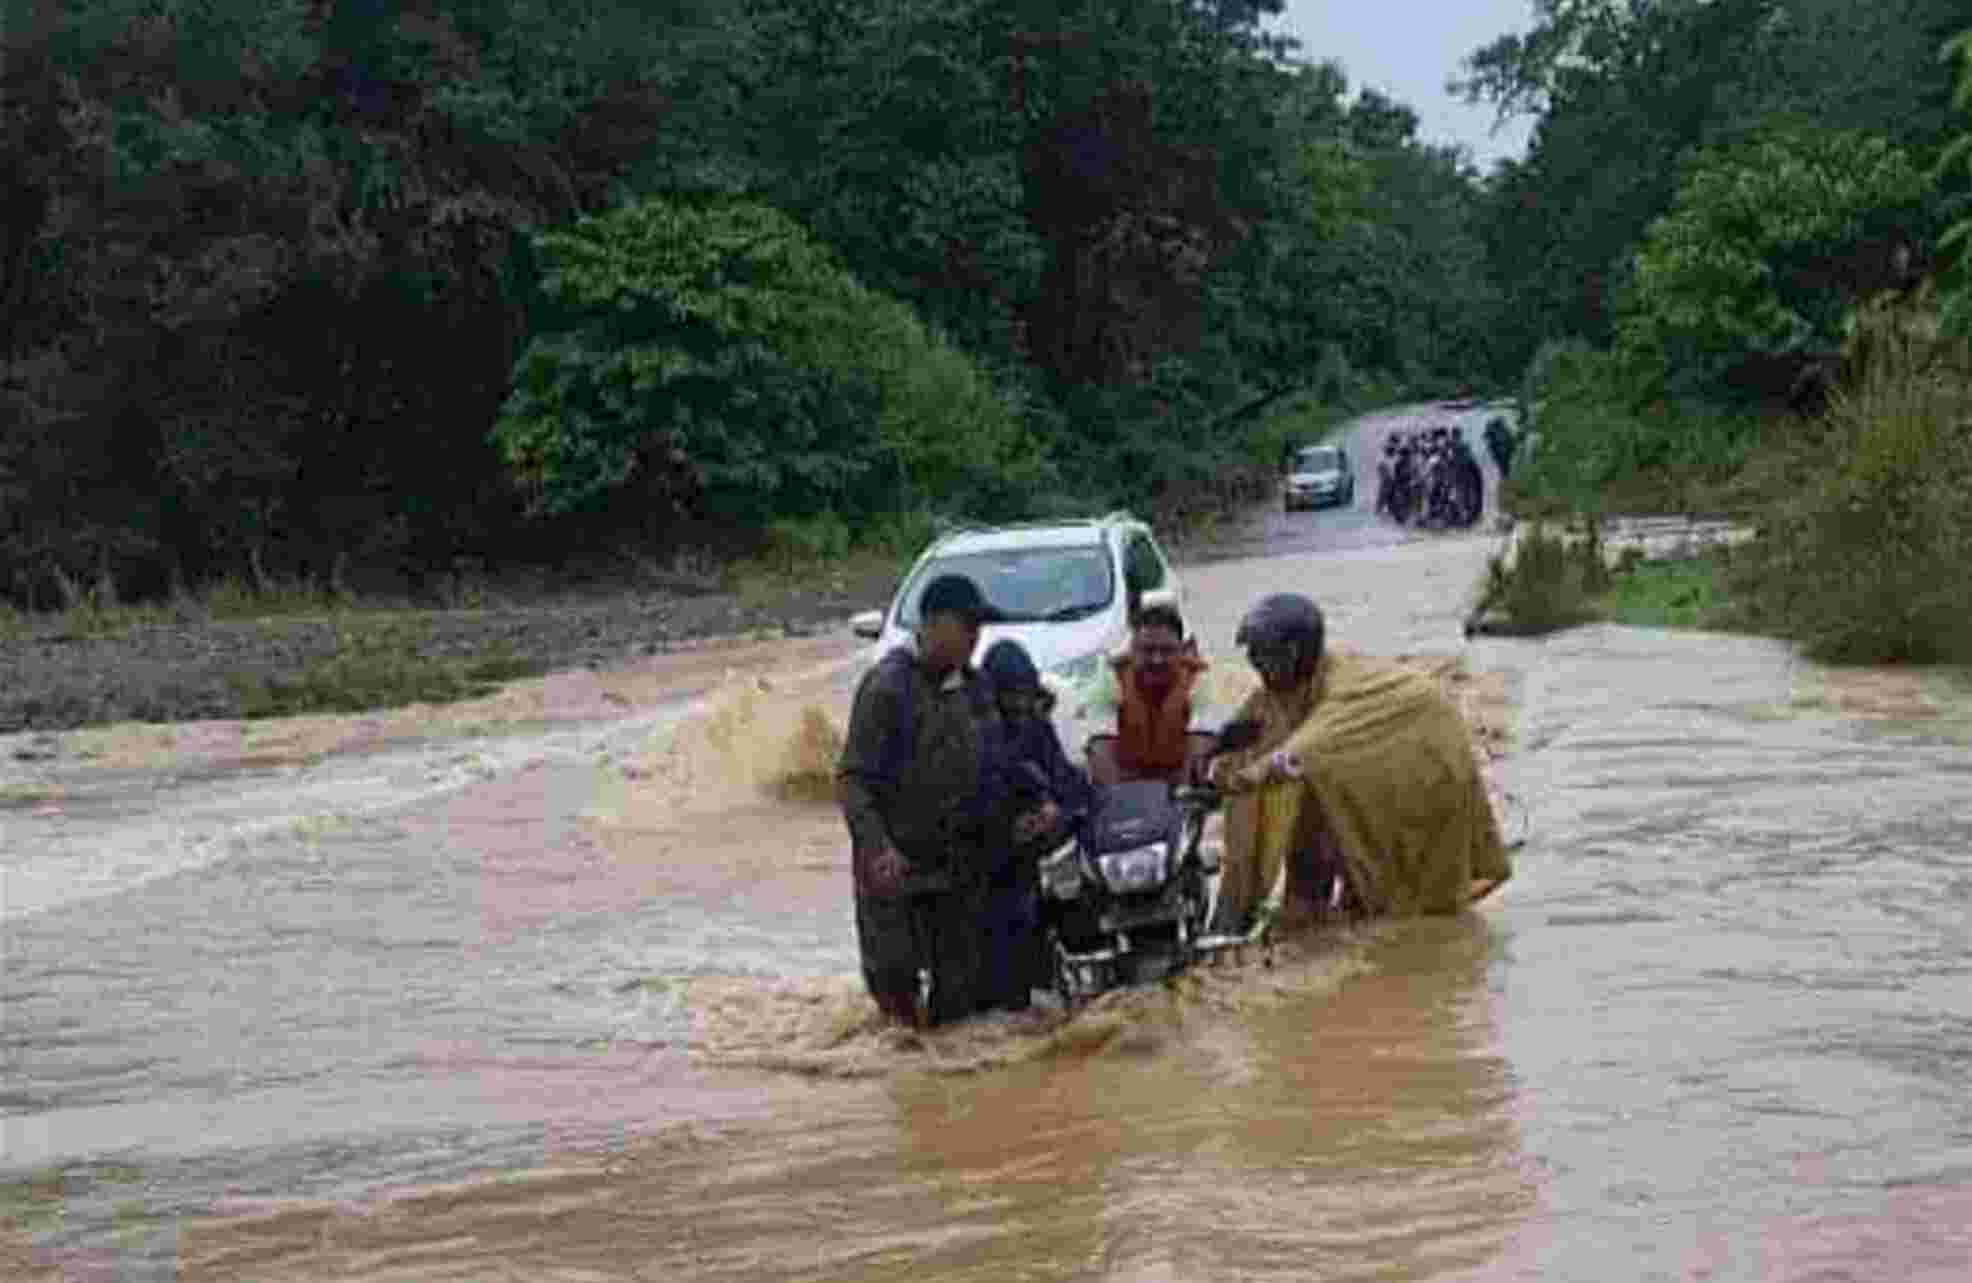 Nainital News: नैनीताल जिले में टूटा रिकॉर्ड बारिश का कहर, चार की मौत, राजमार्ग सहित जिले की 29 सड़कें बंद